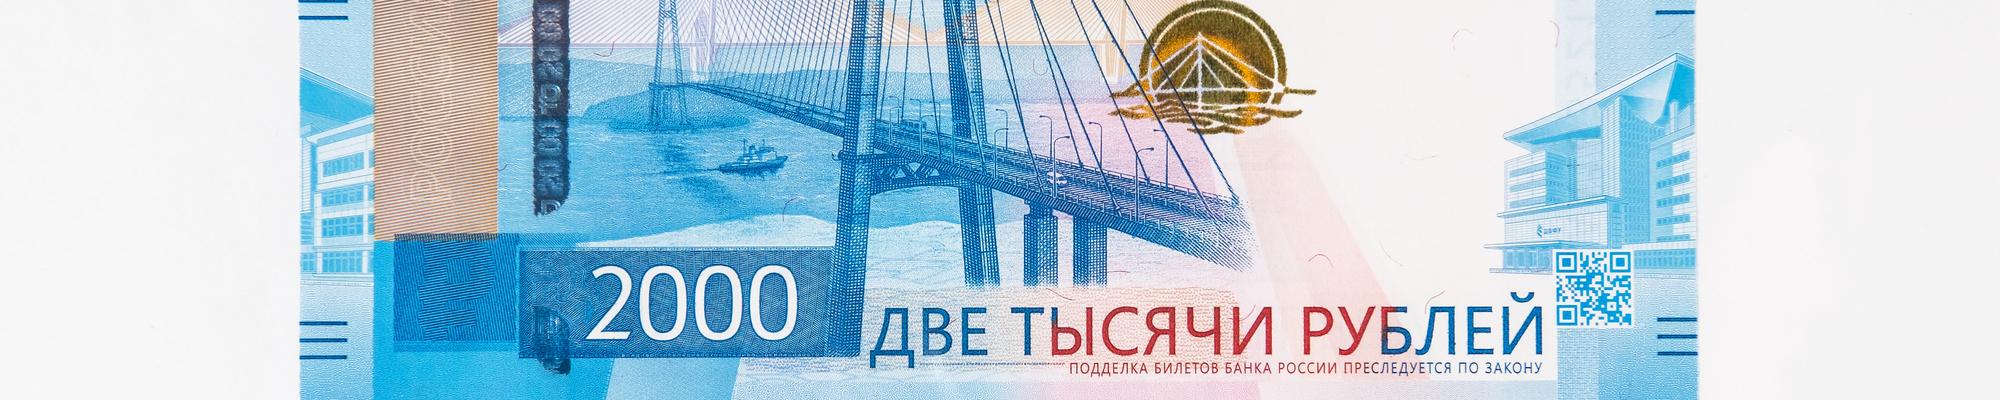 valery161-135.yandex.ru imagem de capa do portfólio